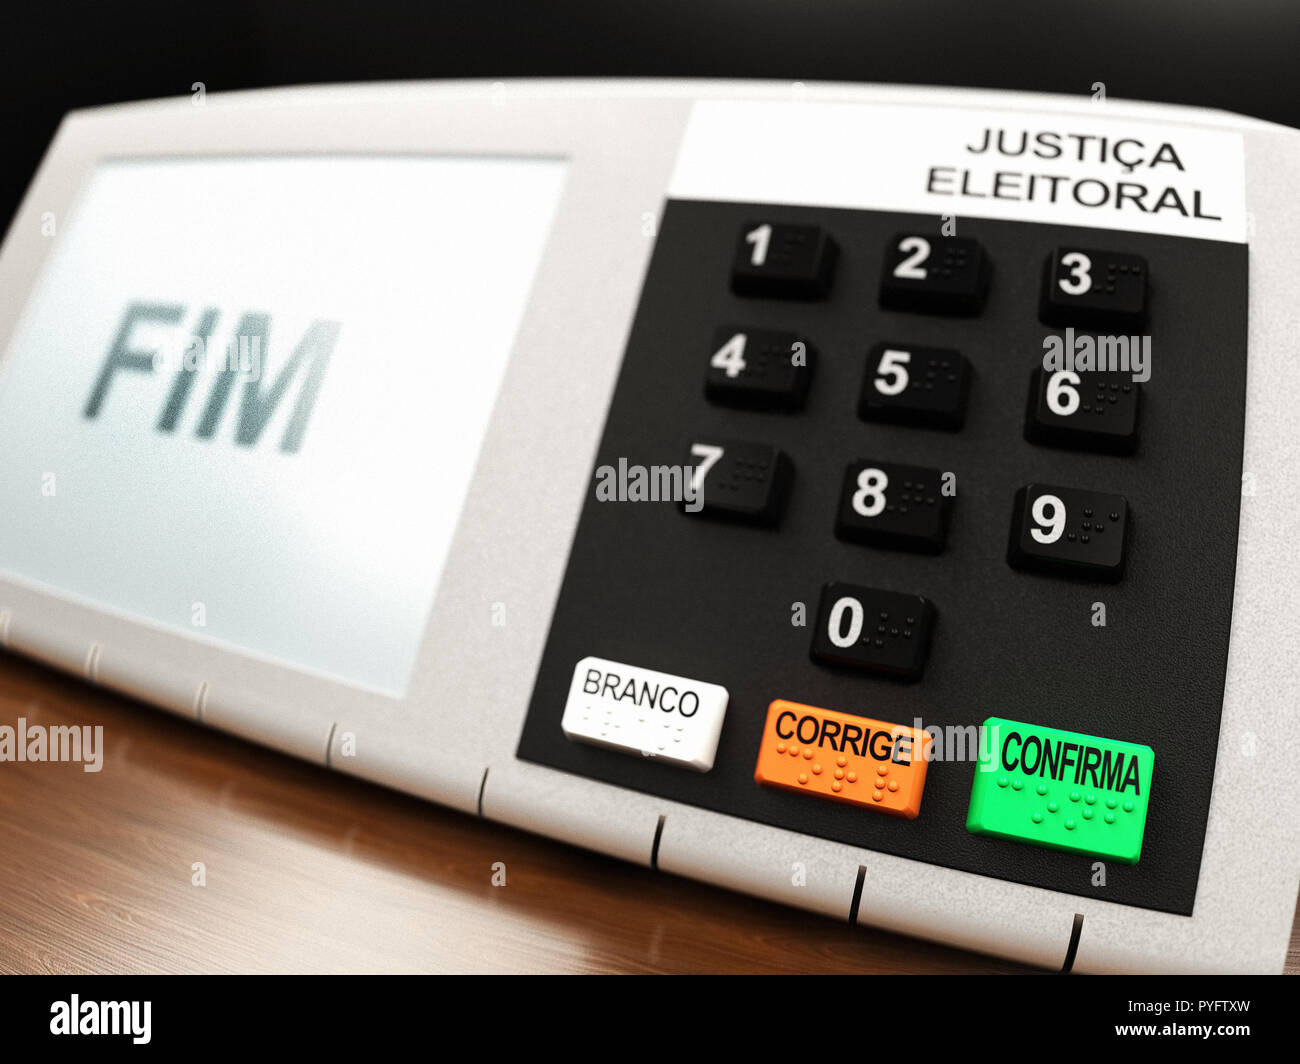 Machine de vote brésilien (urna eletronica) à partir de 2018 l'élection présidentielle au Brésil, avec la FIM (fin) affiché sur l'écran LCD. Banque D'Images